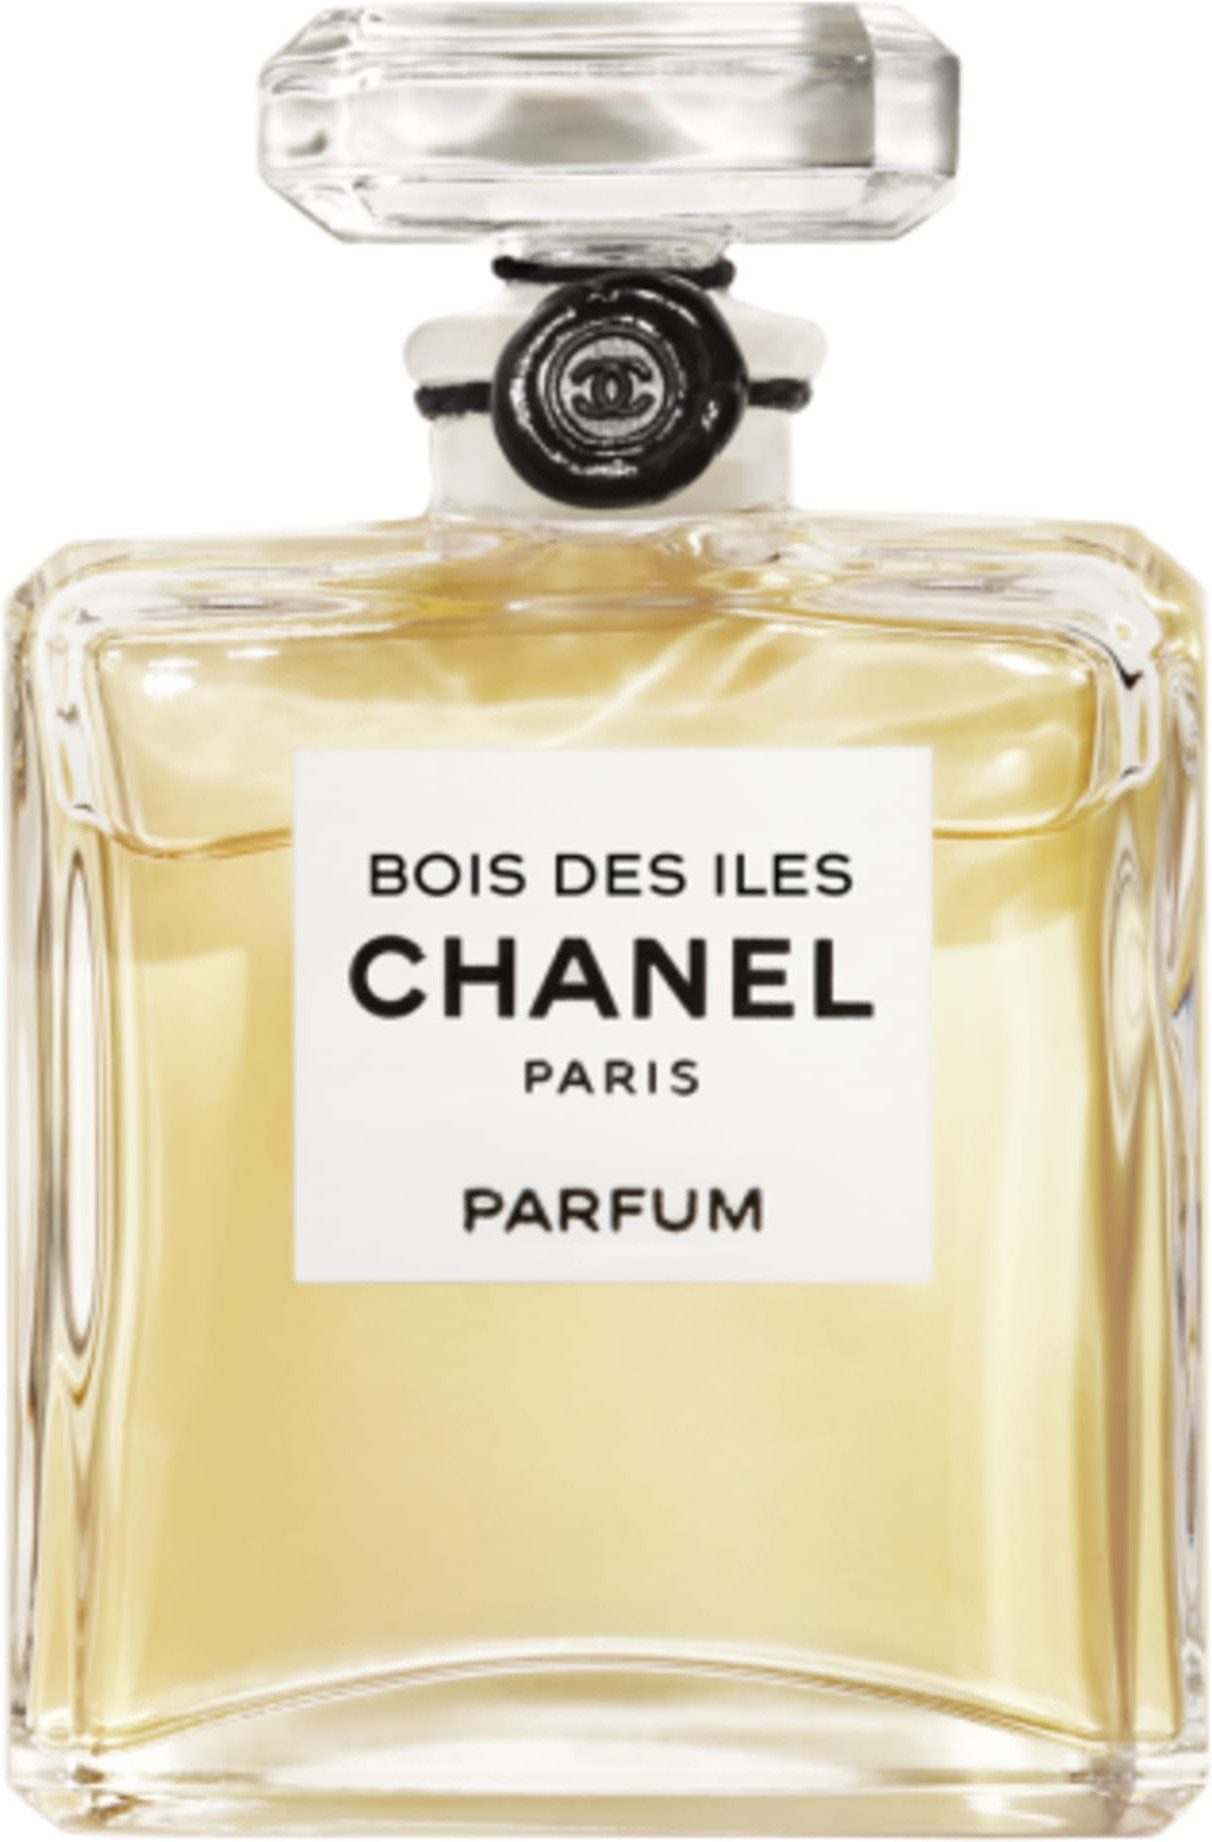 Магазин шанель духи. Chanel 19. Chanel Парфюм 19. Chanel 5 Parfum. Духи Chanel Coromandel.